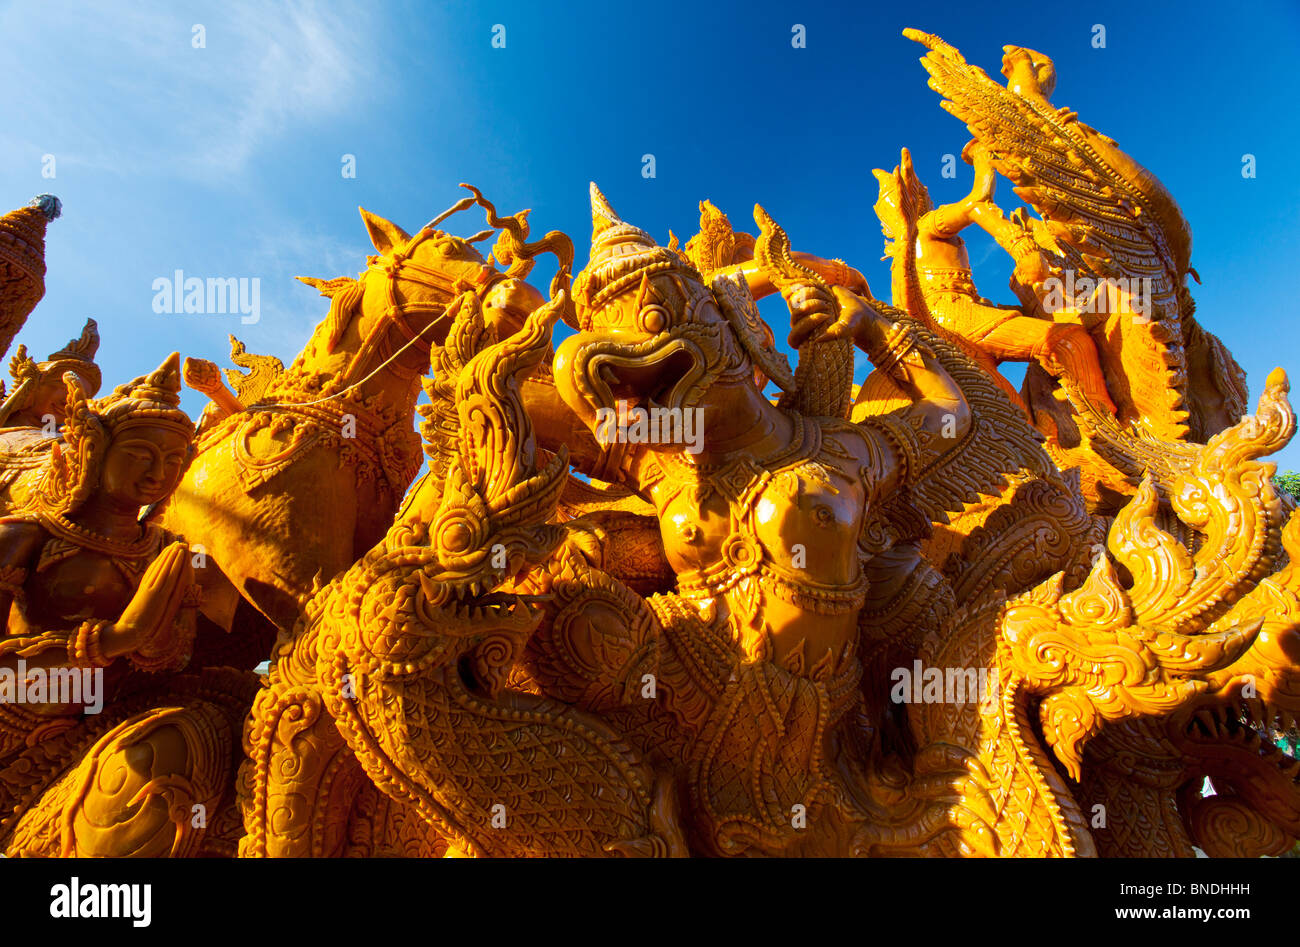 Bougie géante sculpture représentant des scènes du festival bouddhiste Bougie Ubon Rajchathani Thaïlande Banque D'Images